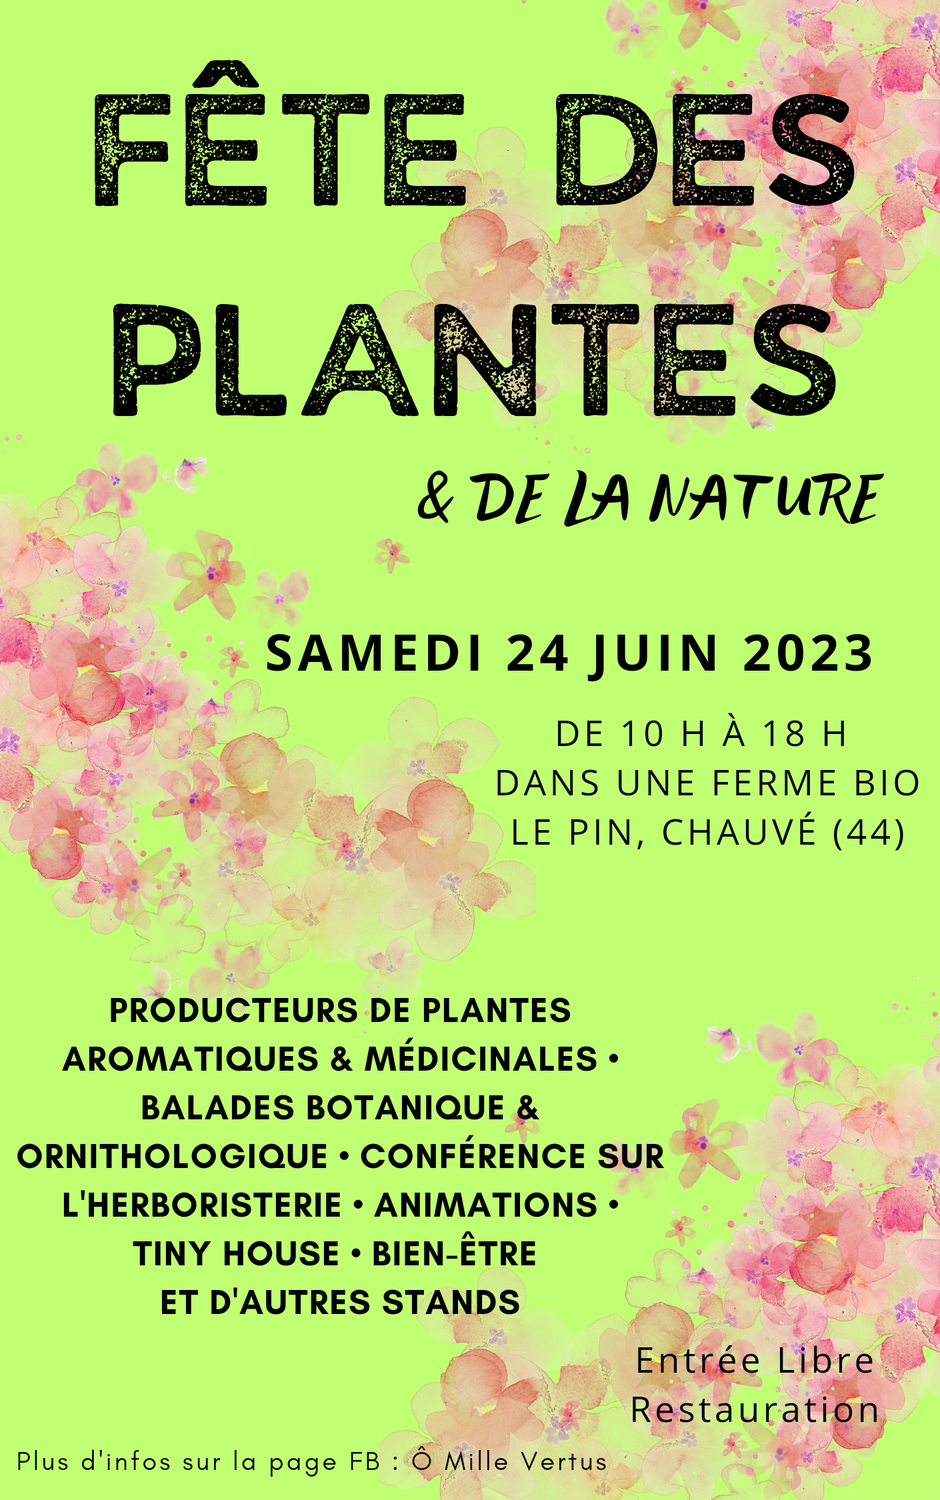 Samedi 24 Juin - Fête des plantes et de la nature sur la ferme familiale